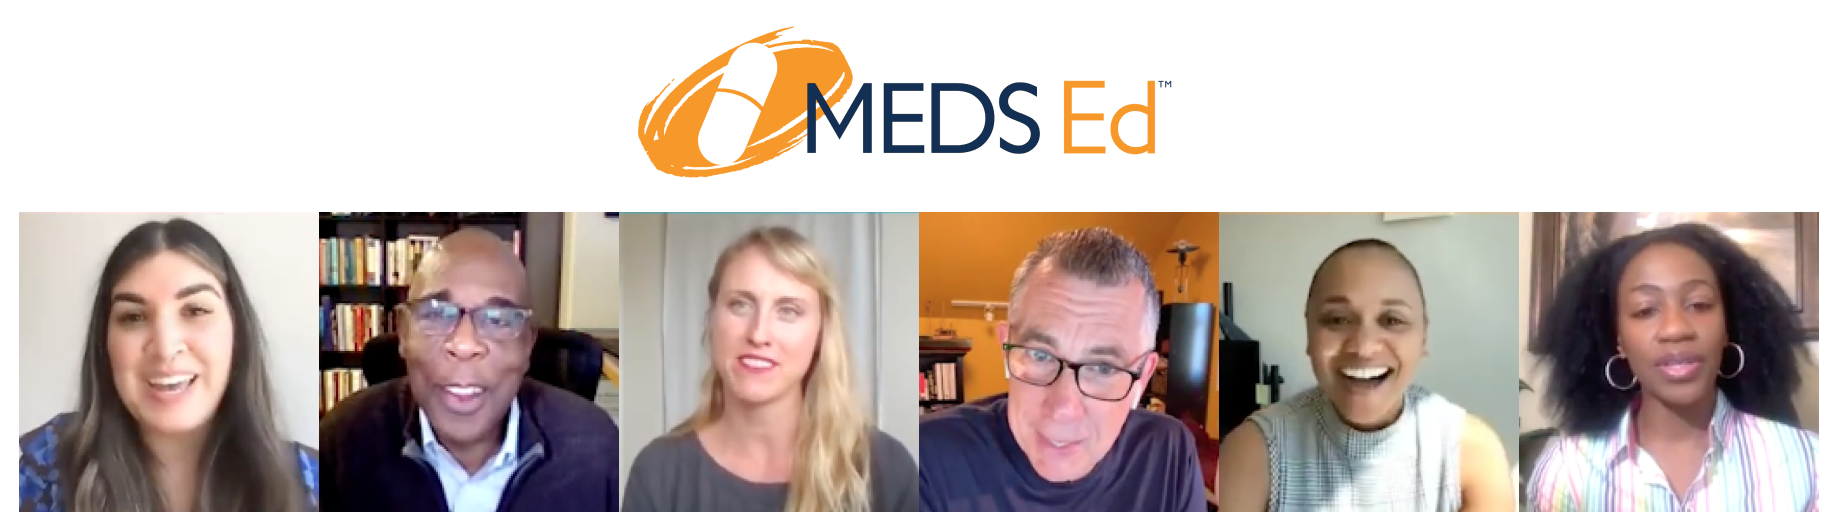 MEDS Ed logo header